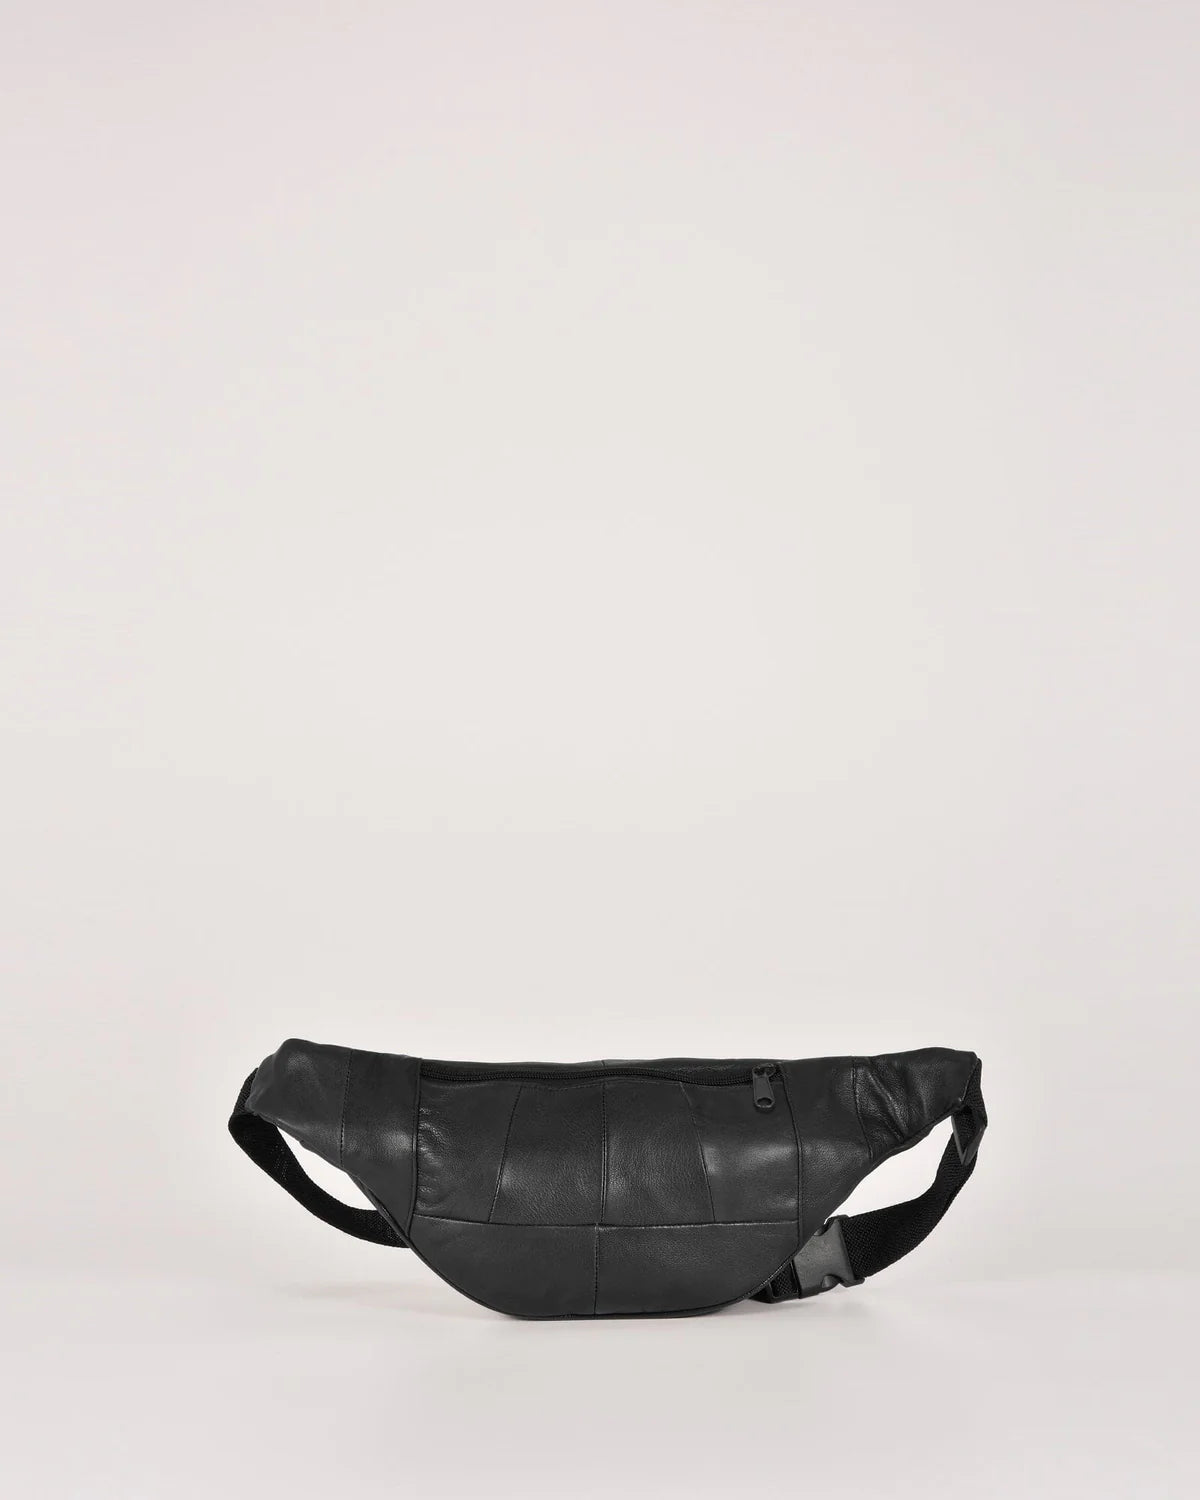 Cobb & Co - Leather Waist bag